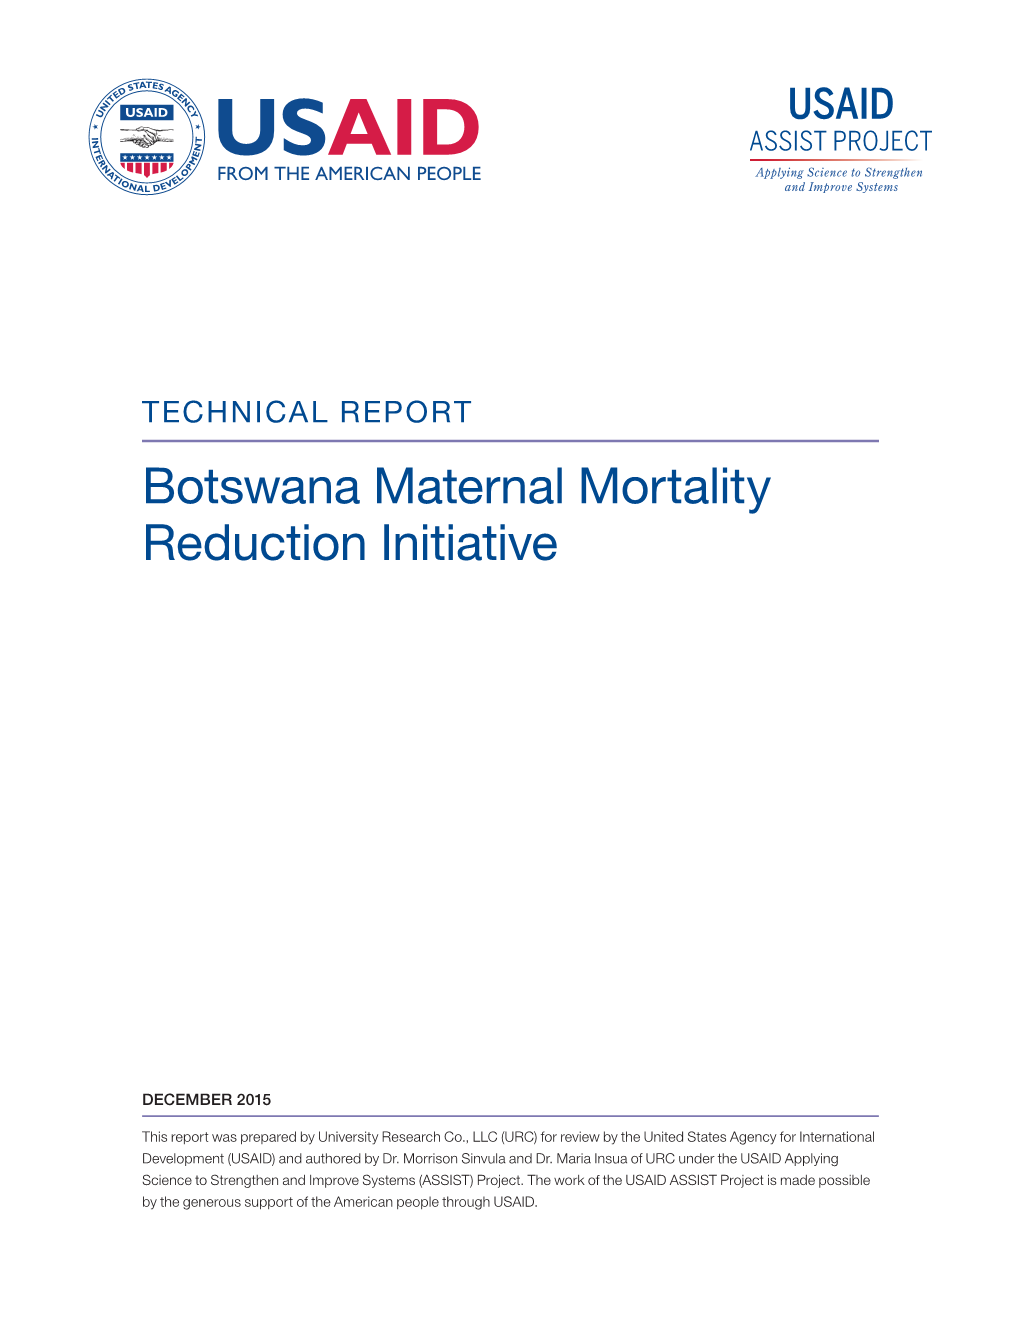 Botswana Maternal Mortality Reduction Initiative